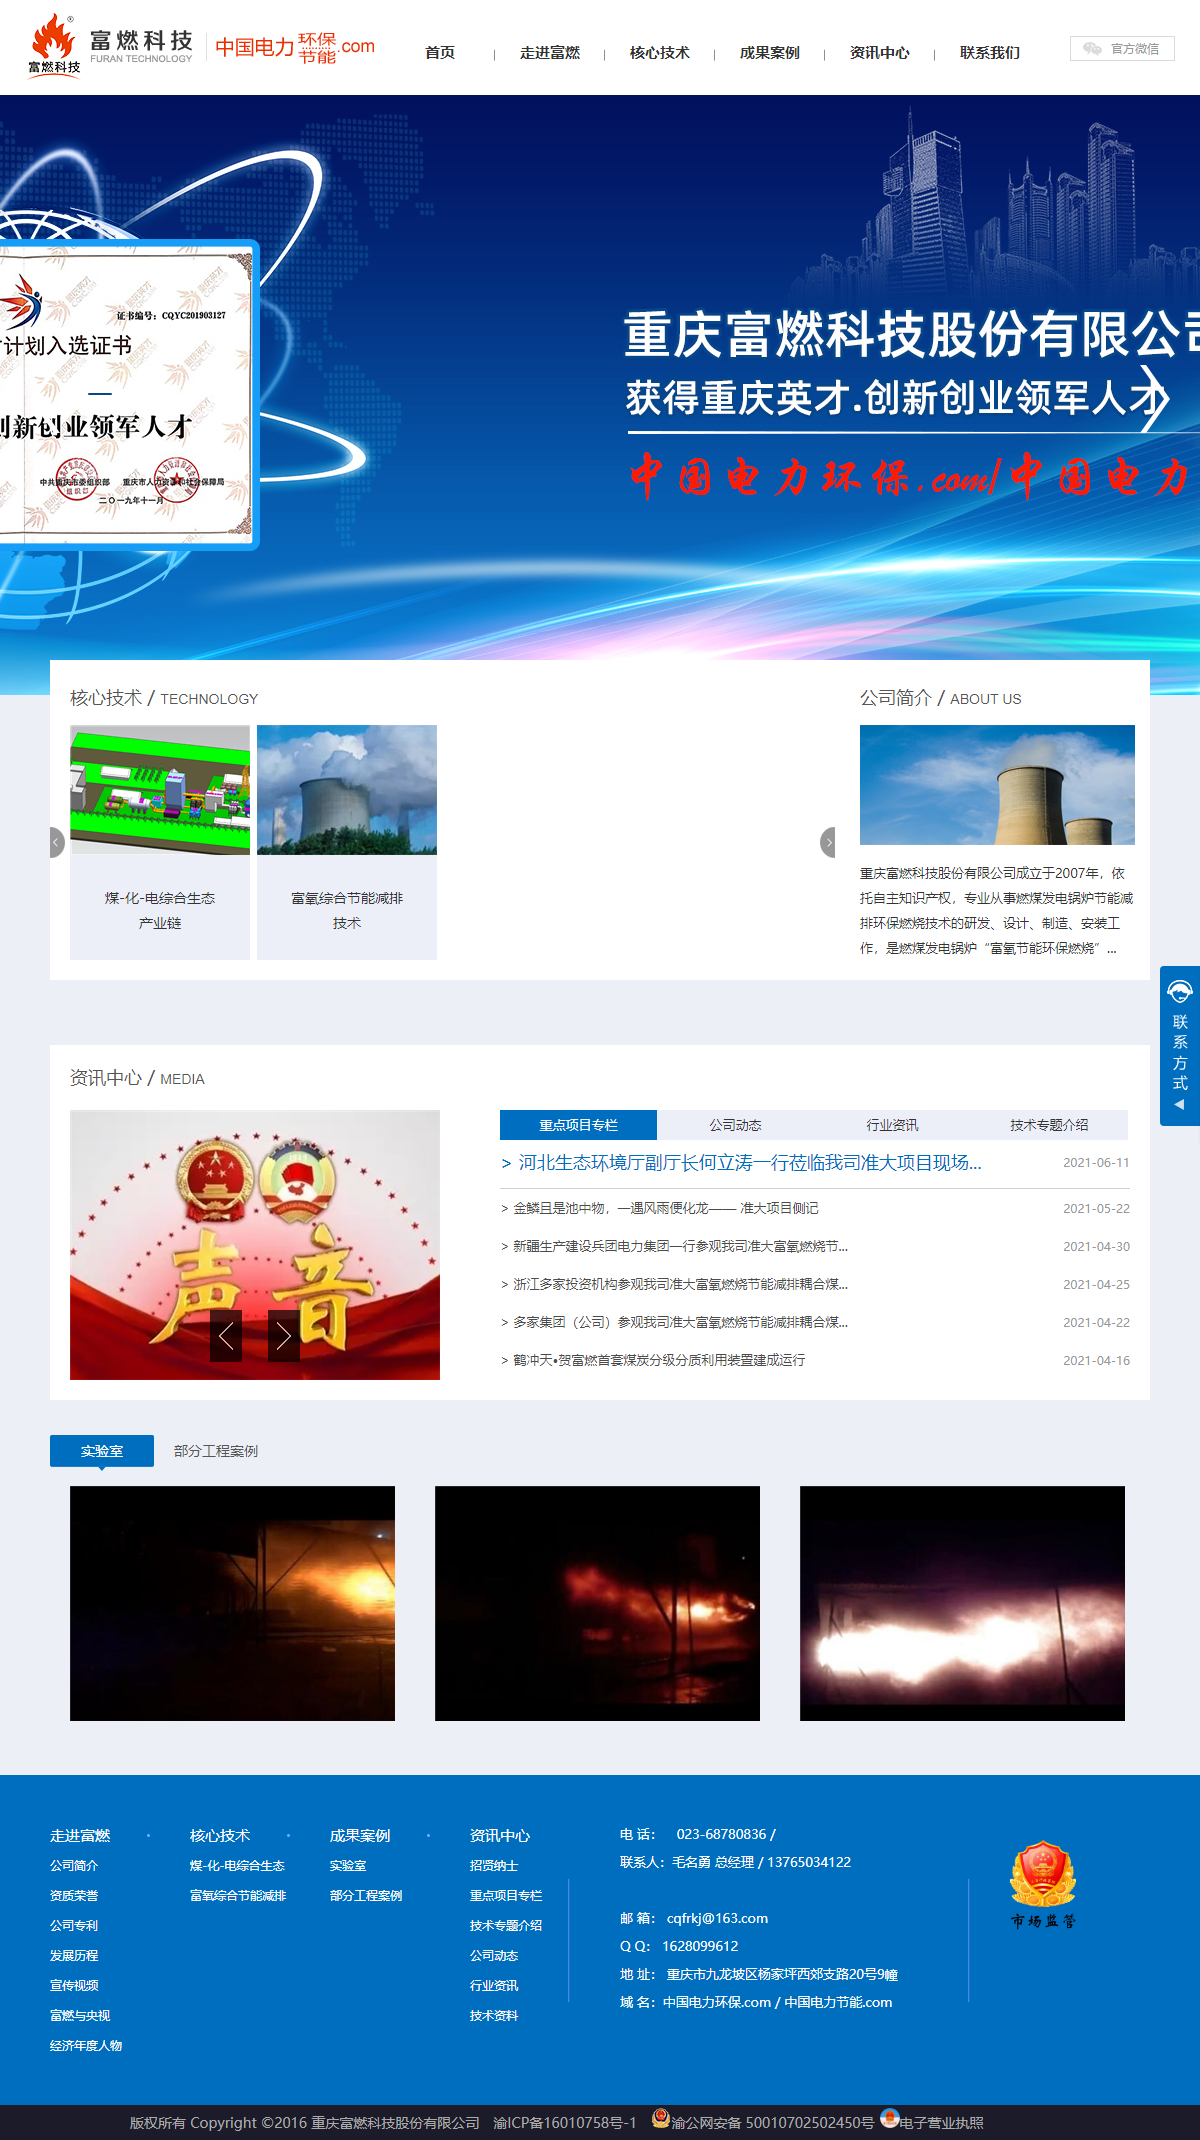 重庆富燃科技股份有限公司网站案例